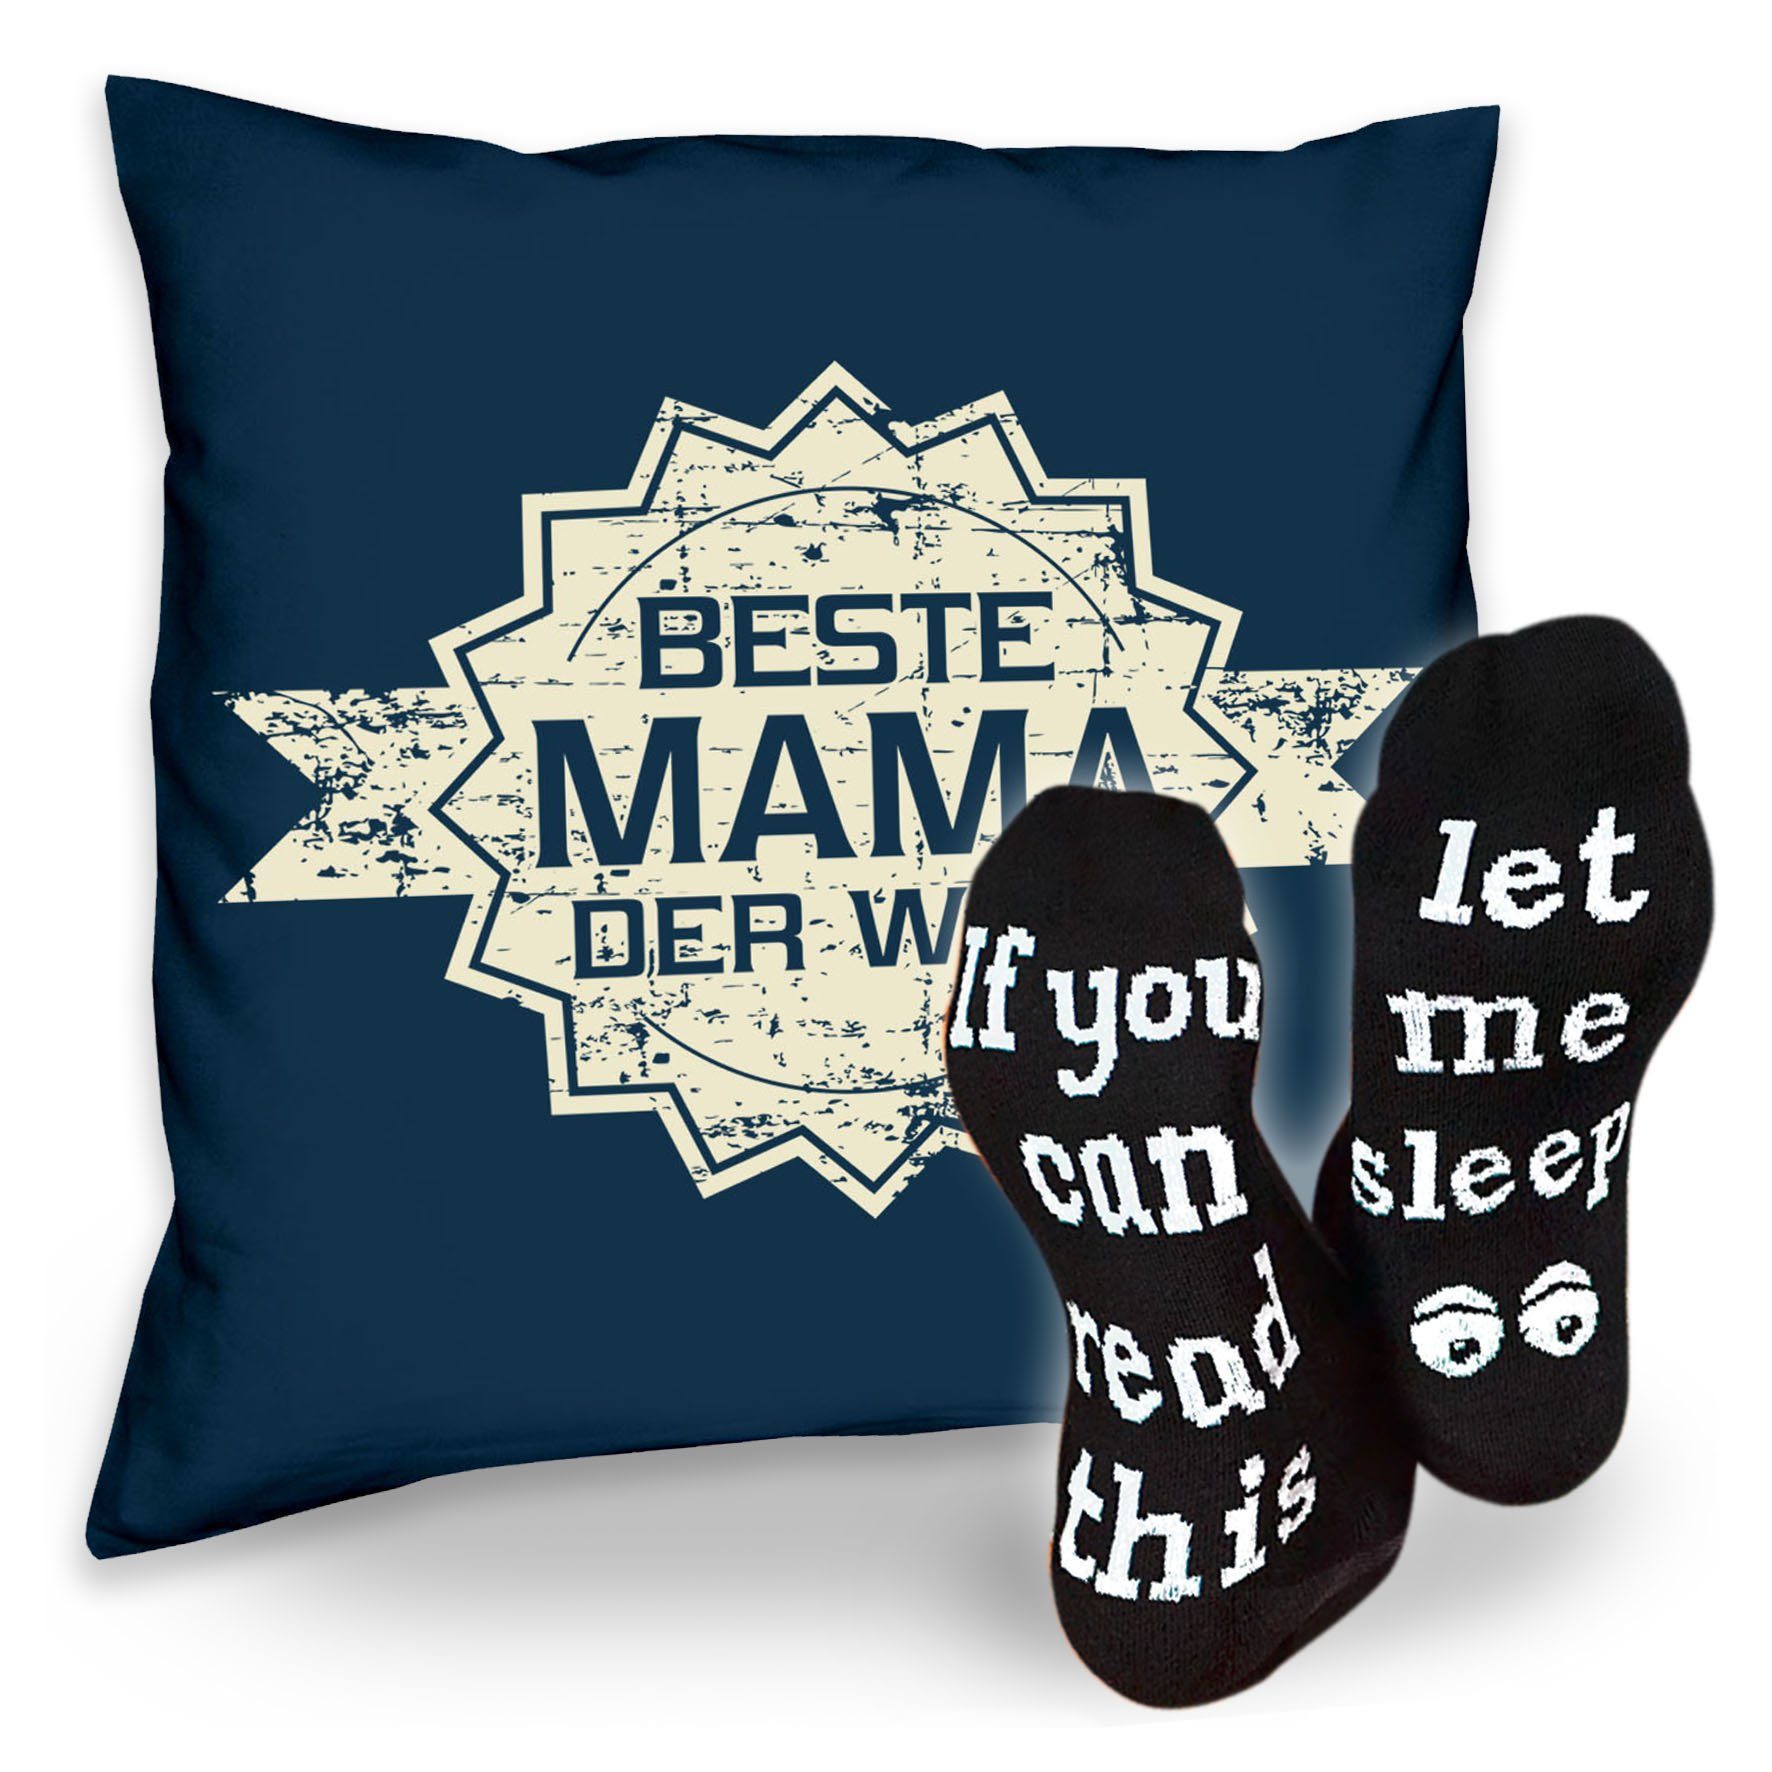 Soreso® Dekokissen Kissen Beste Mama der Welt Stern & Sprüche Socken Sleep, Geschenkidee Weihnachtsgeschenk navy-blau